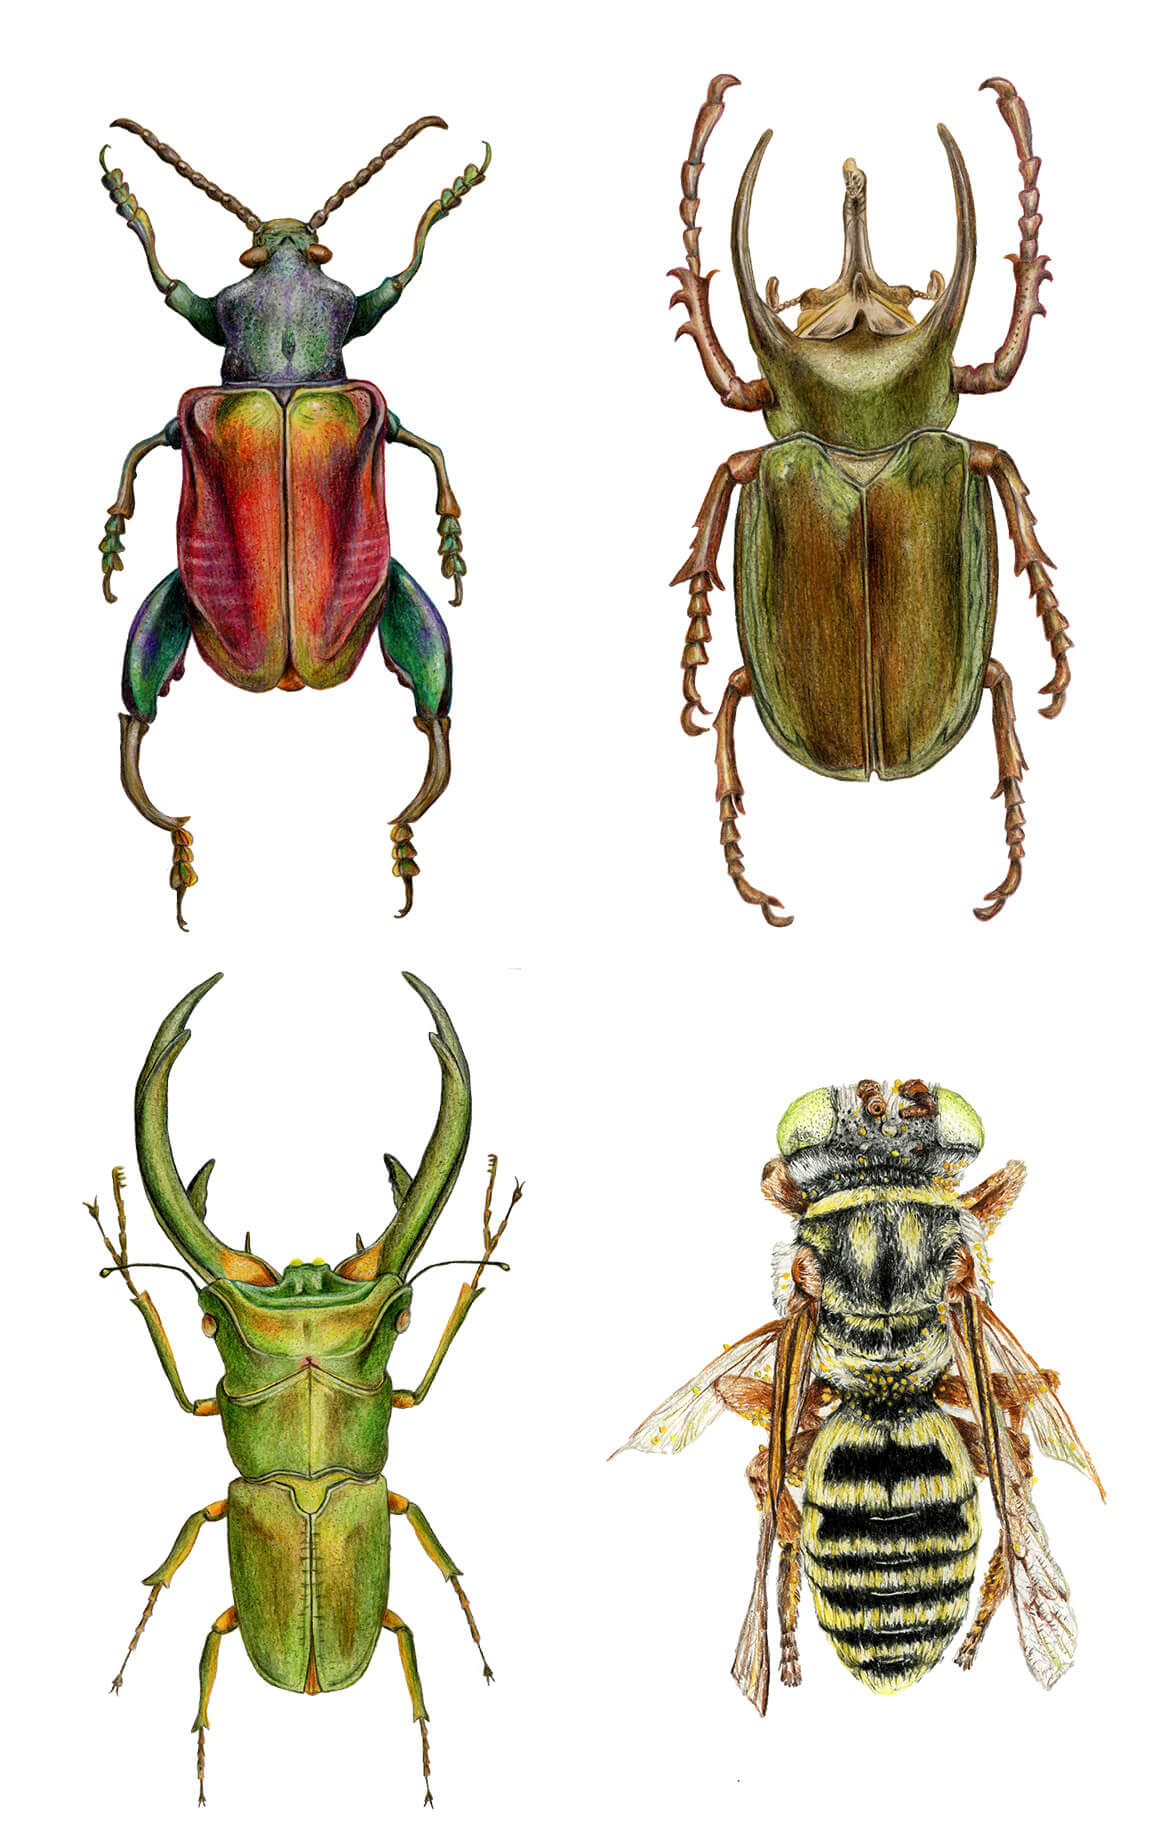 Buntstift-Abbildungen eines schillernden Froschbeinkäfers, eines Altlaskäfers, eines Riesenhirschkäfers mit beeindruckenden Beißzangen und einer Biene